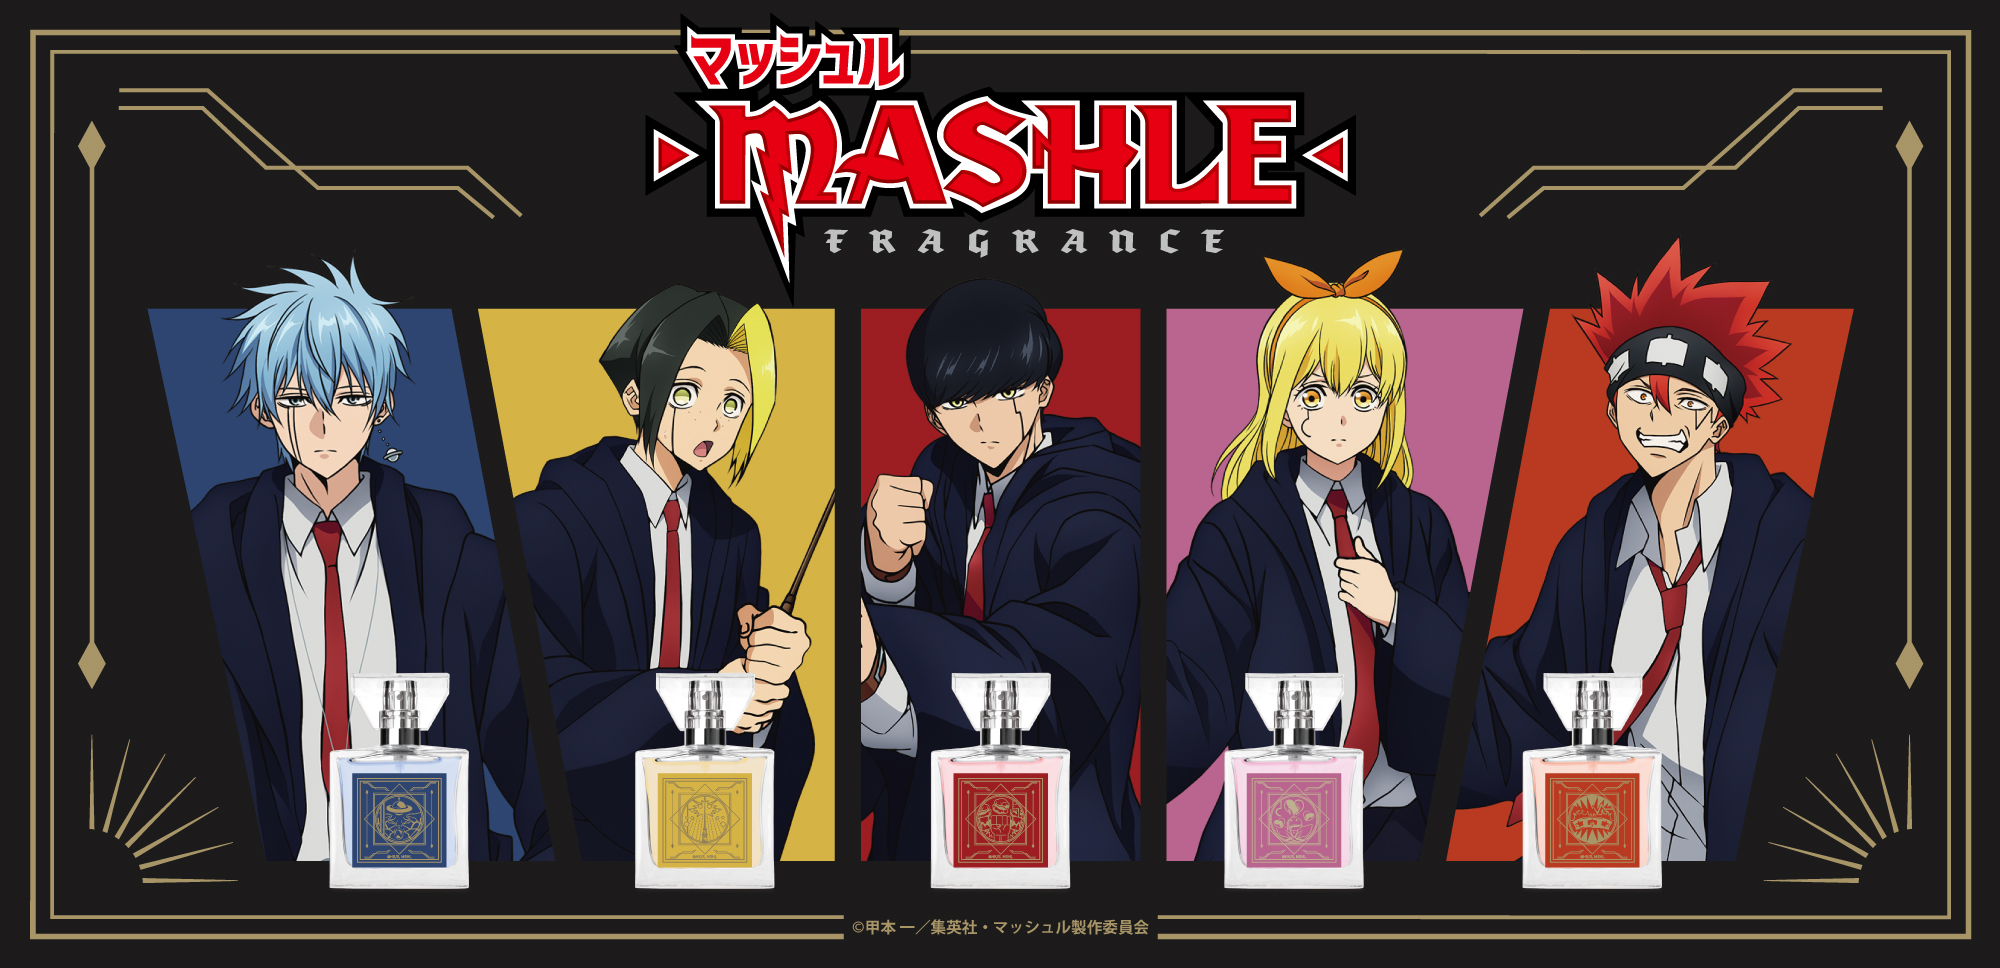 TVアニメ『マッシュル-MASHLE-』フレグランス